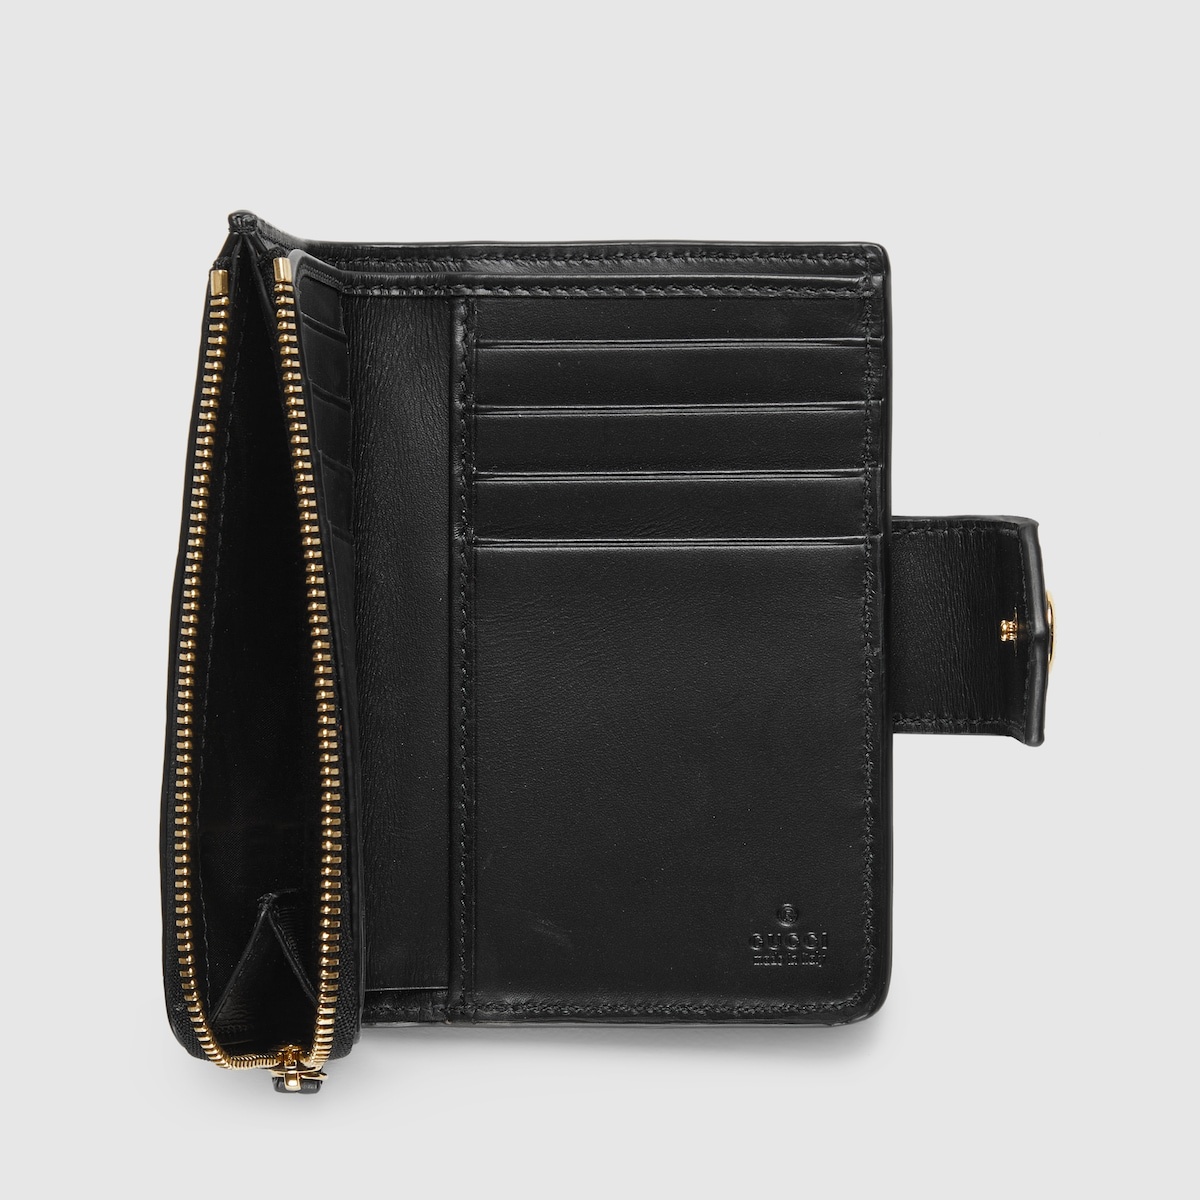 GG medium wallet - 6